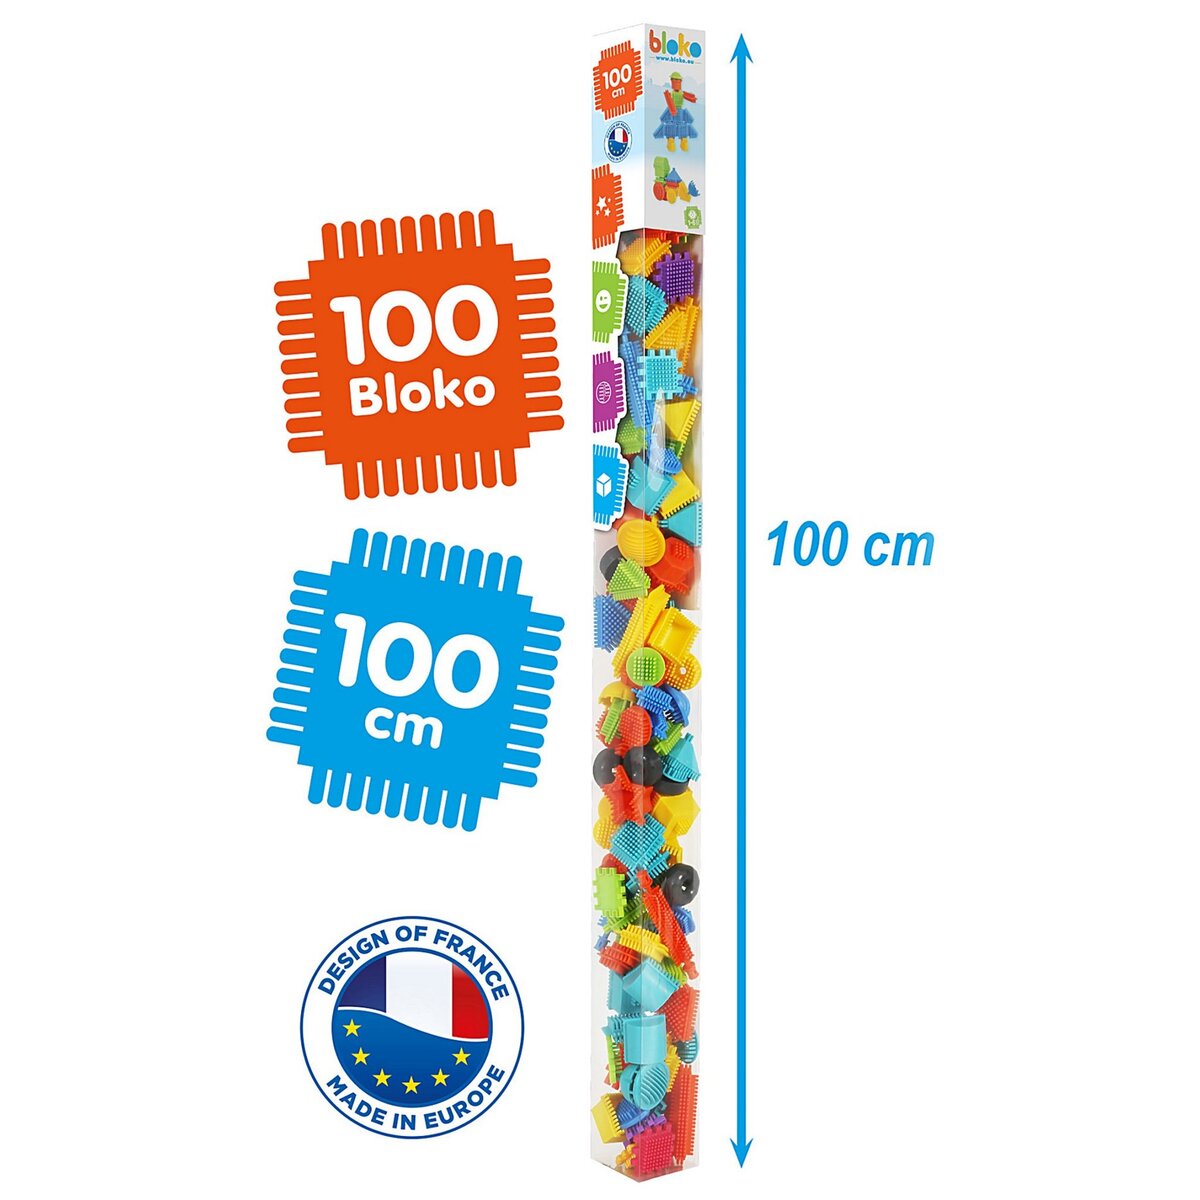 Bloko Bloko display 12 tubes 1 mètre 100 bloko